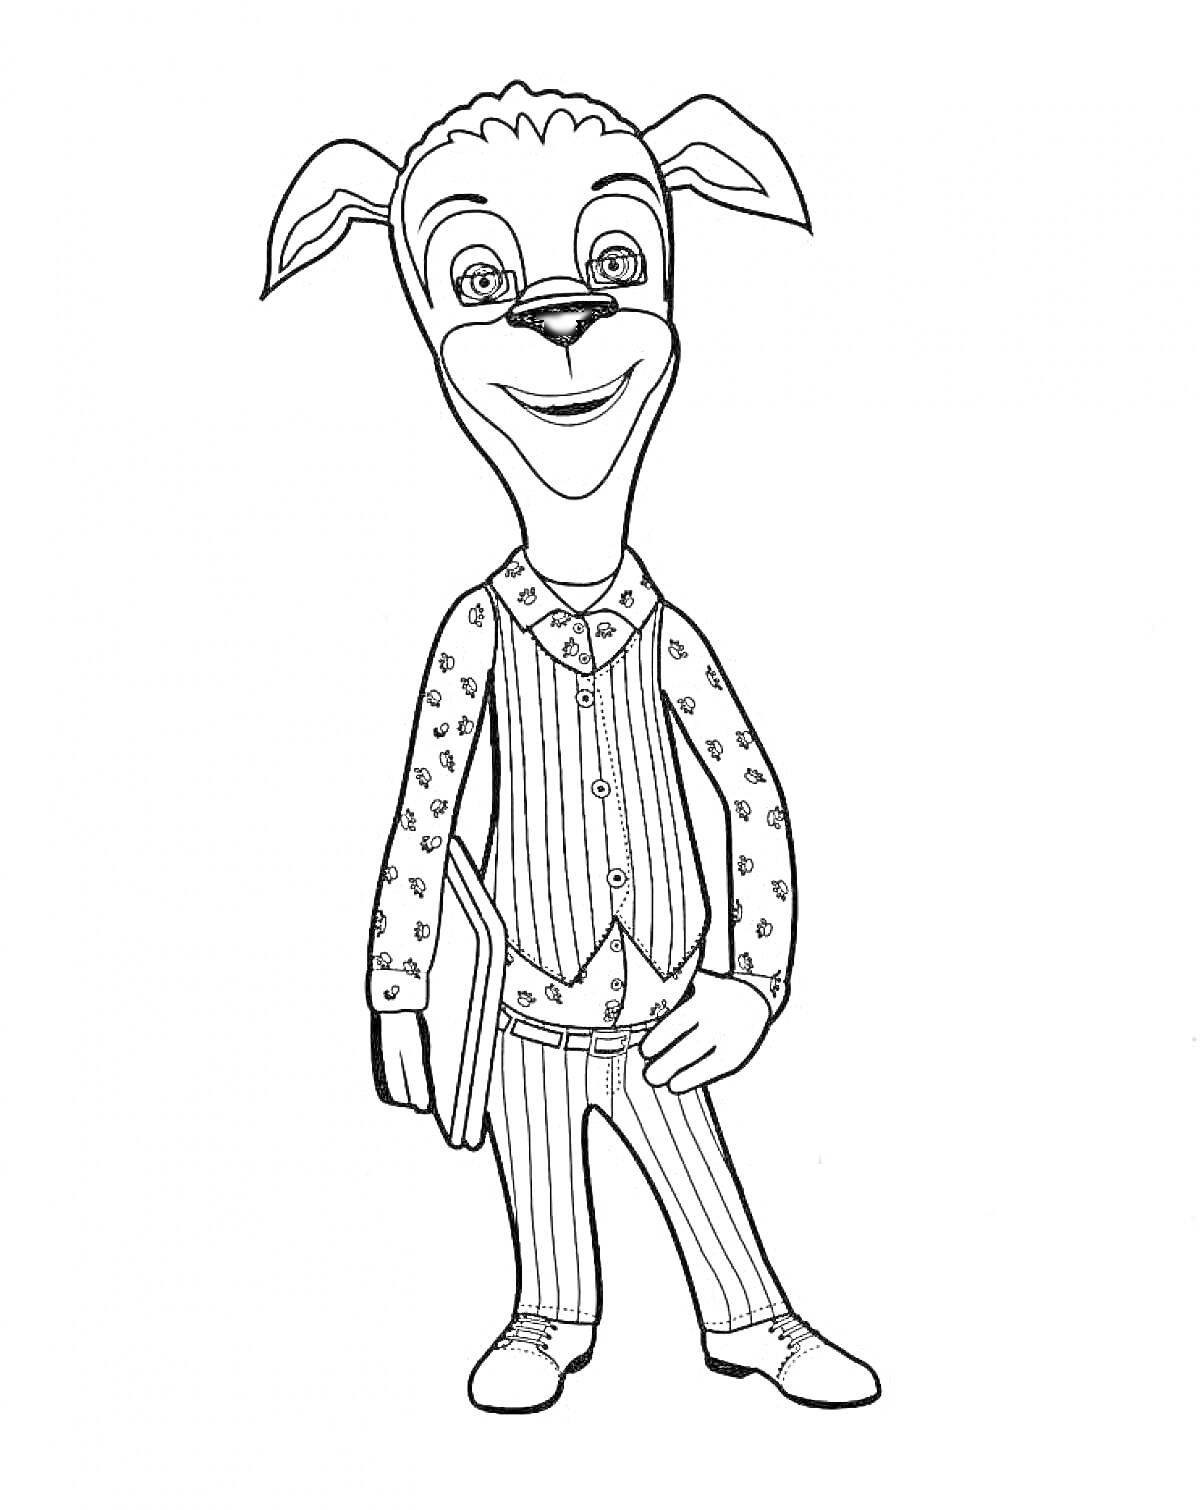 Раскраска Барбоскины - персонаж в рубашке с узором, жилете в полоску и брюках с рисунком, с книгой в руке